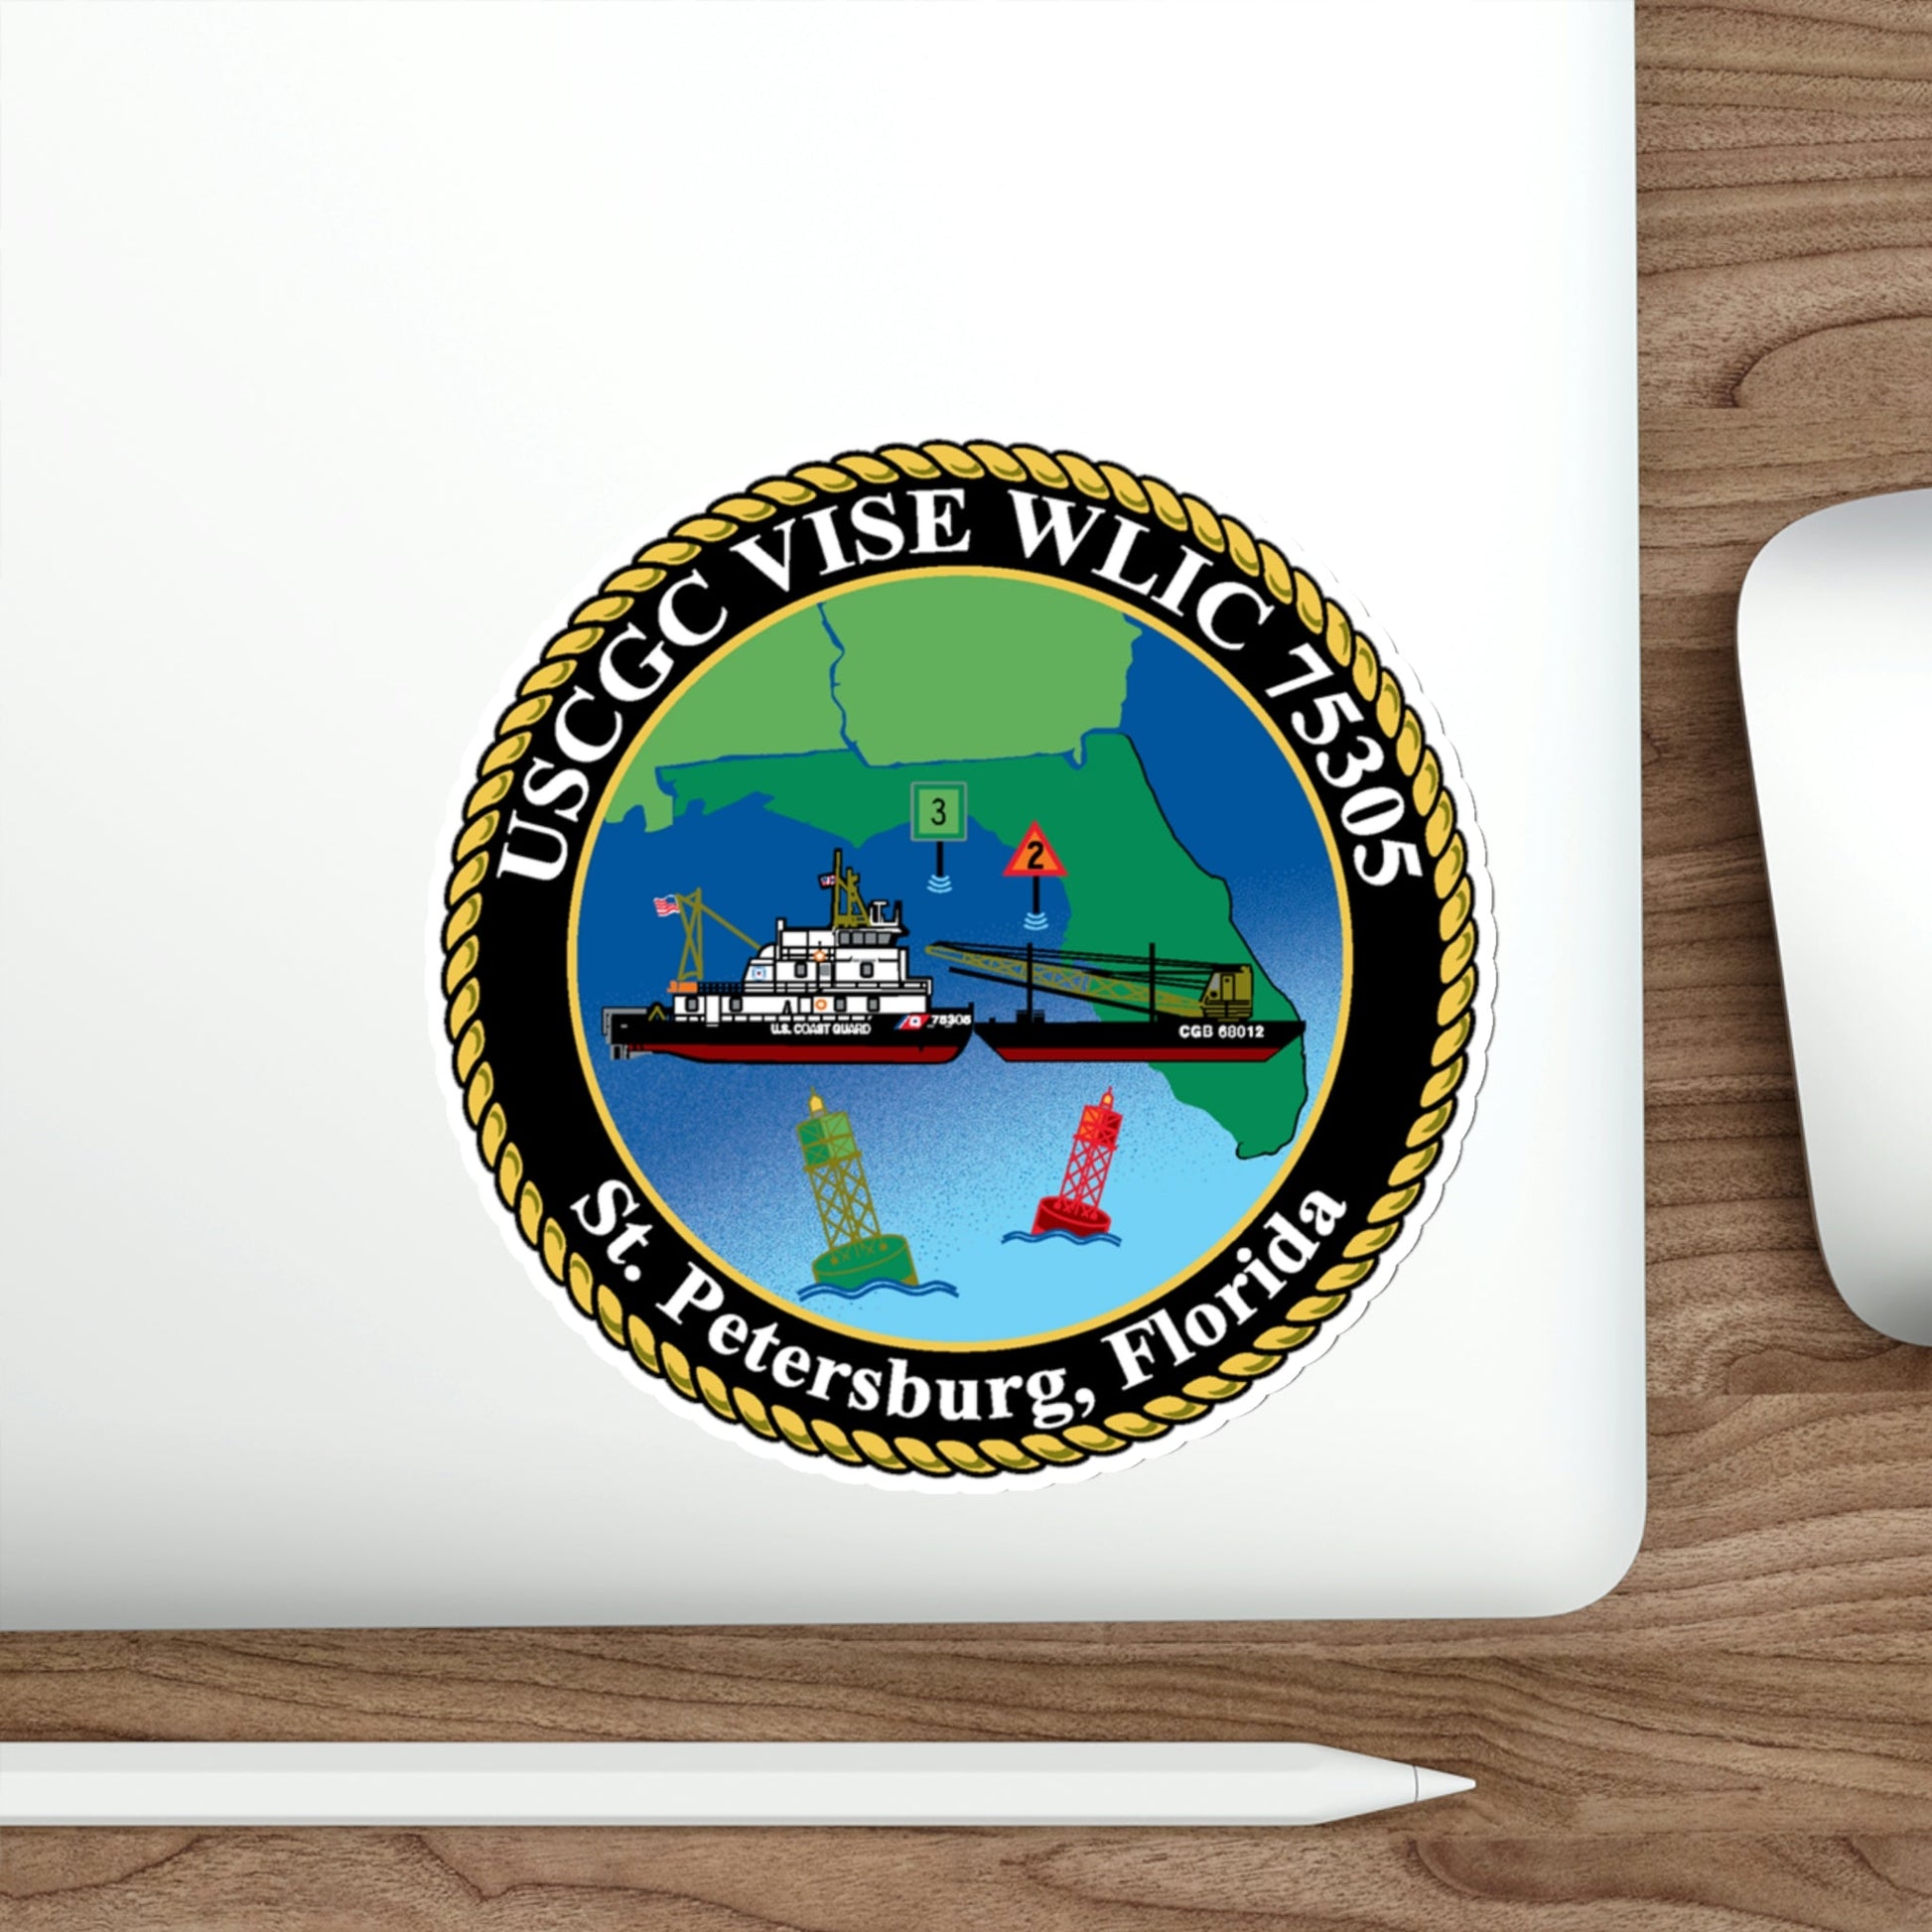 USCGC VISE WLIC 75305 (U.S. Coast Guard) STICKER Vinyl Die-Cut Decal-The Sticker Space